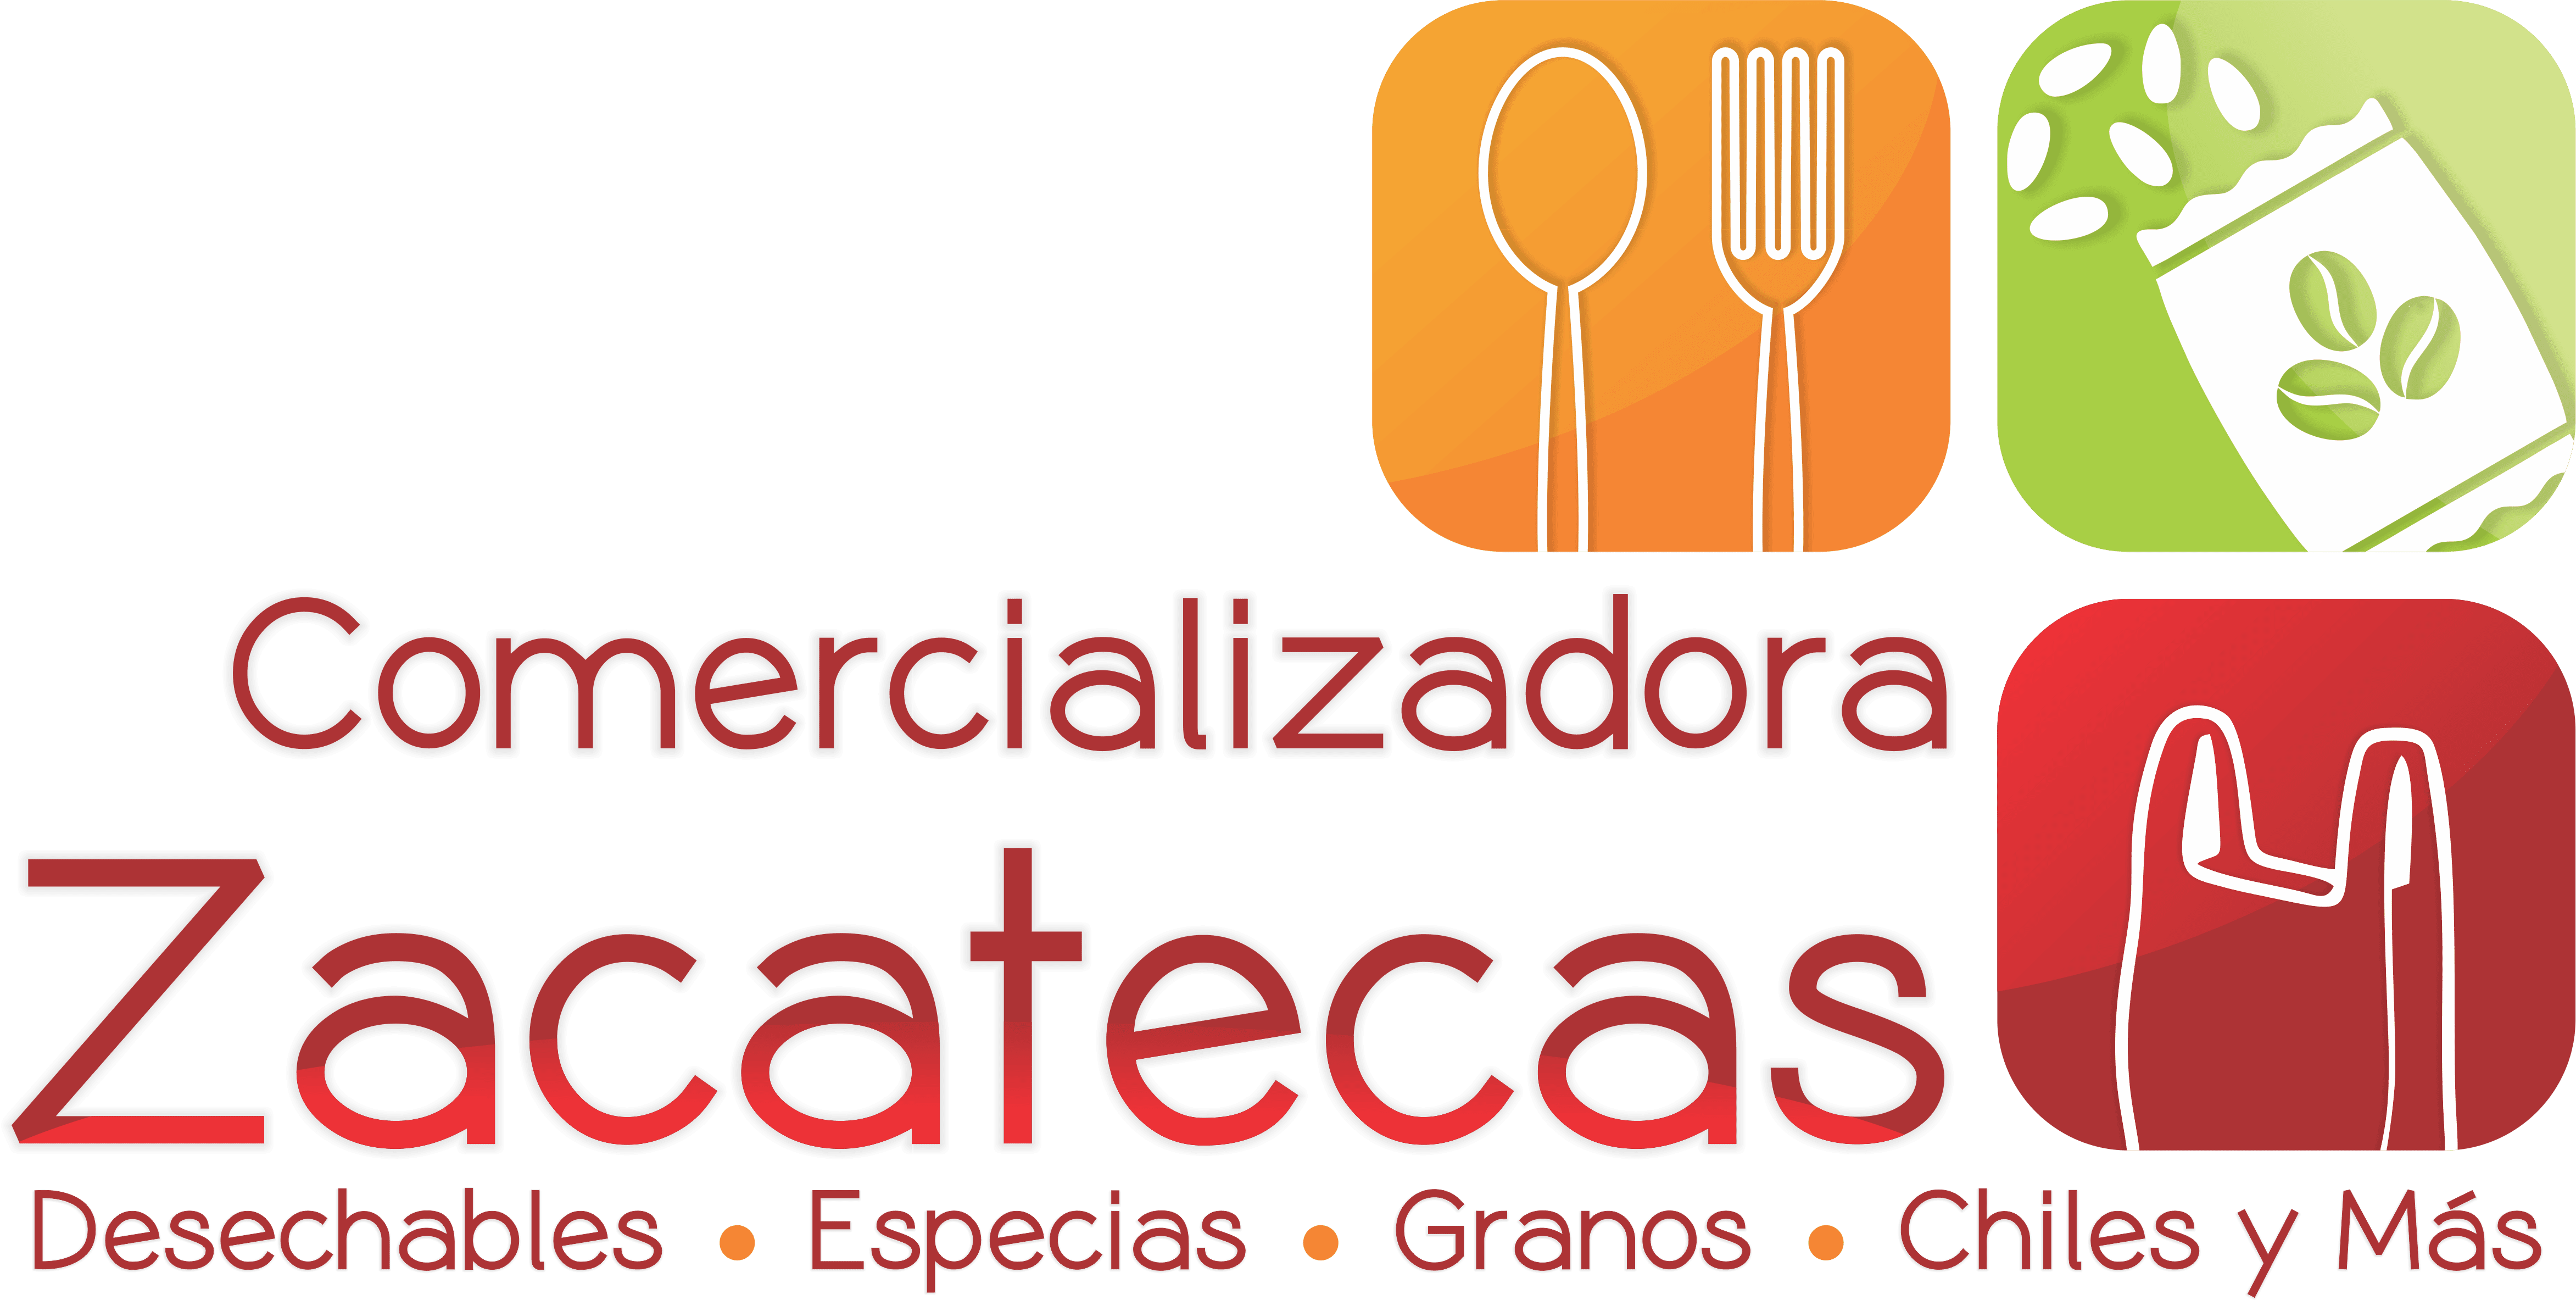 Comercializadora Zacatecas